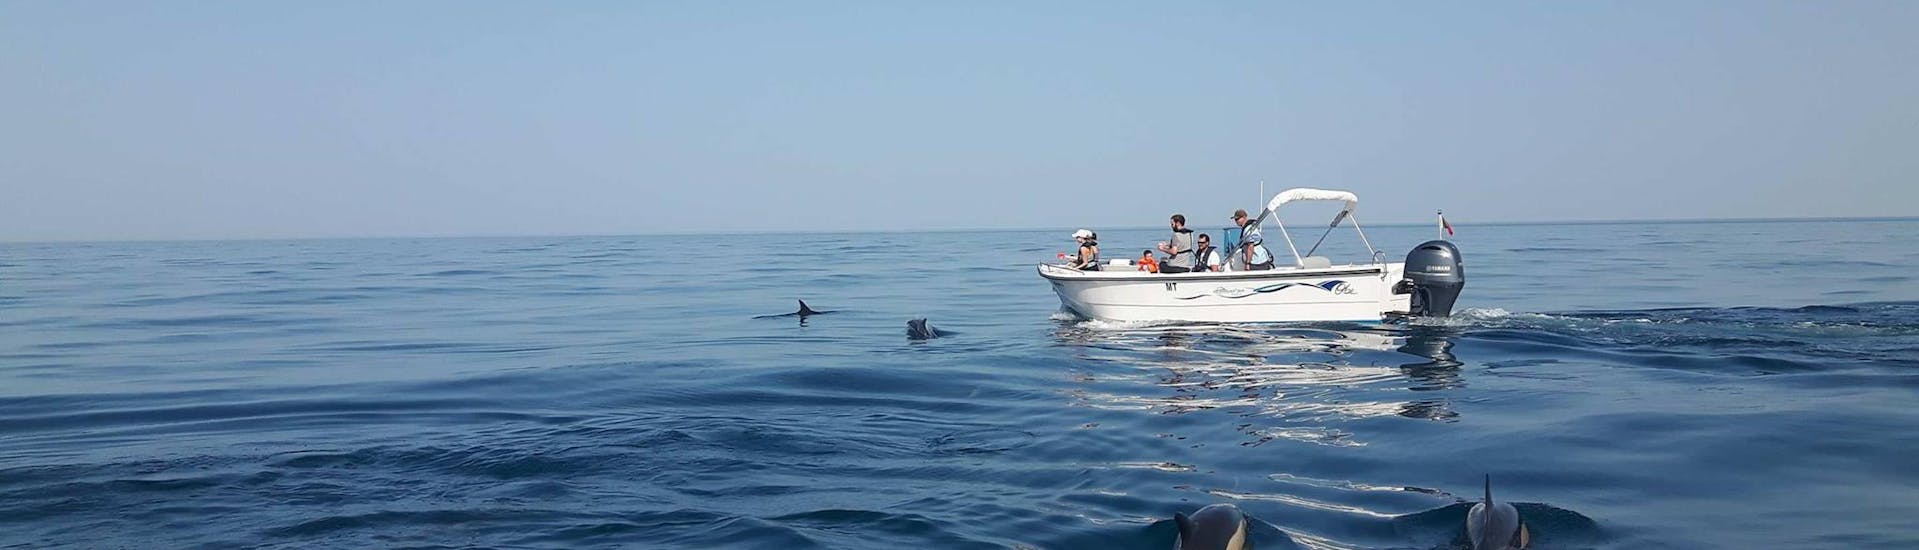 Avistamiento de Delfines en Faro.